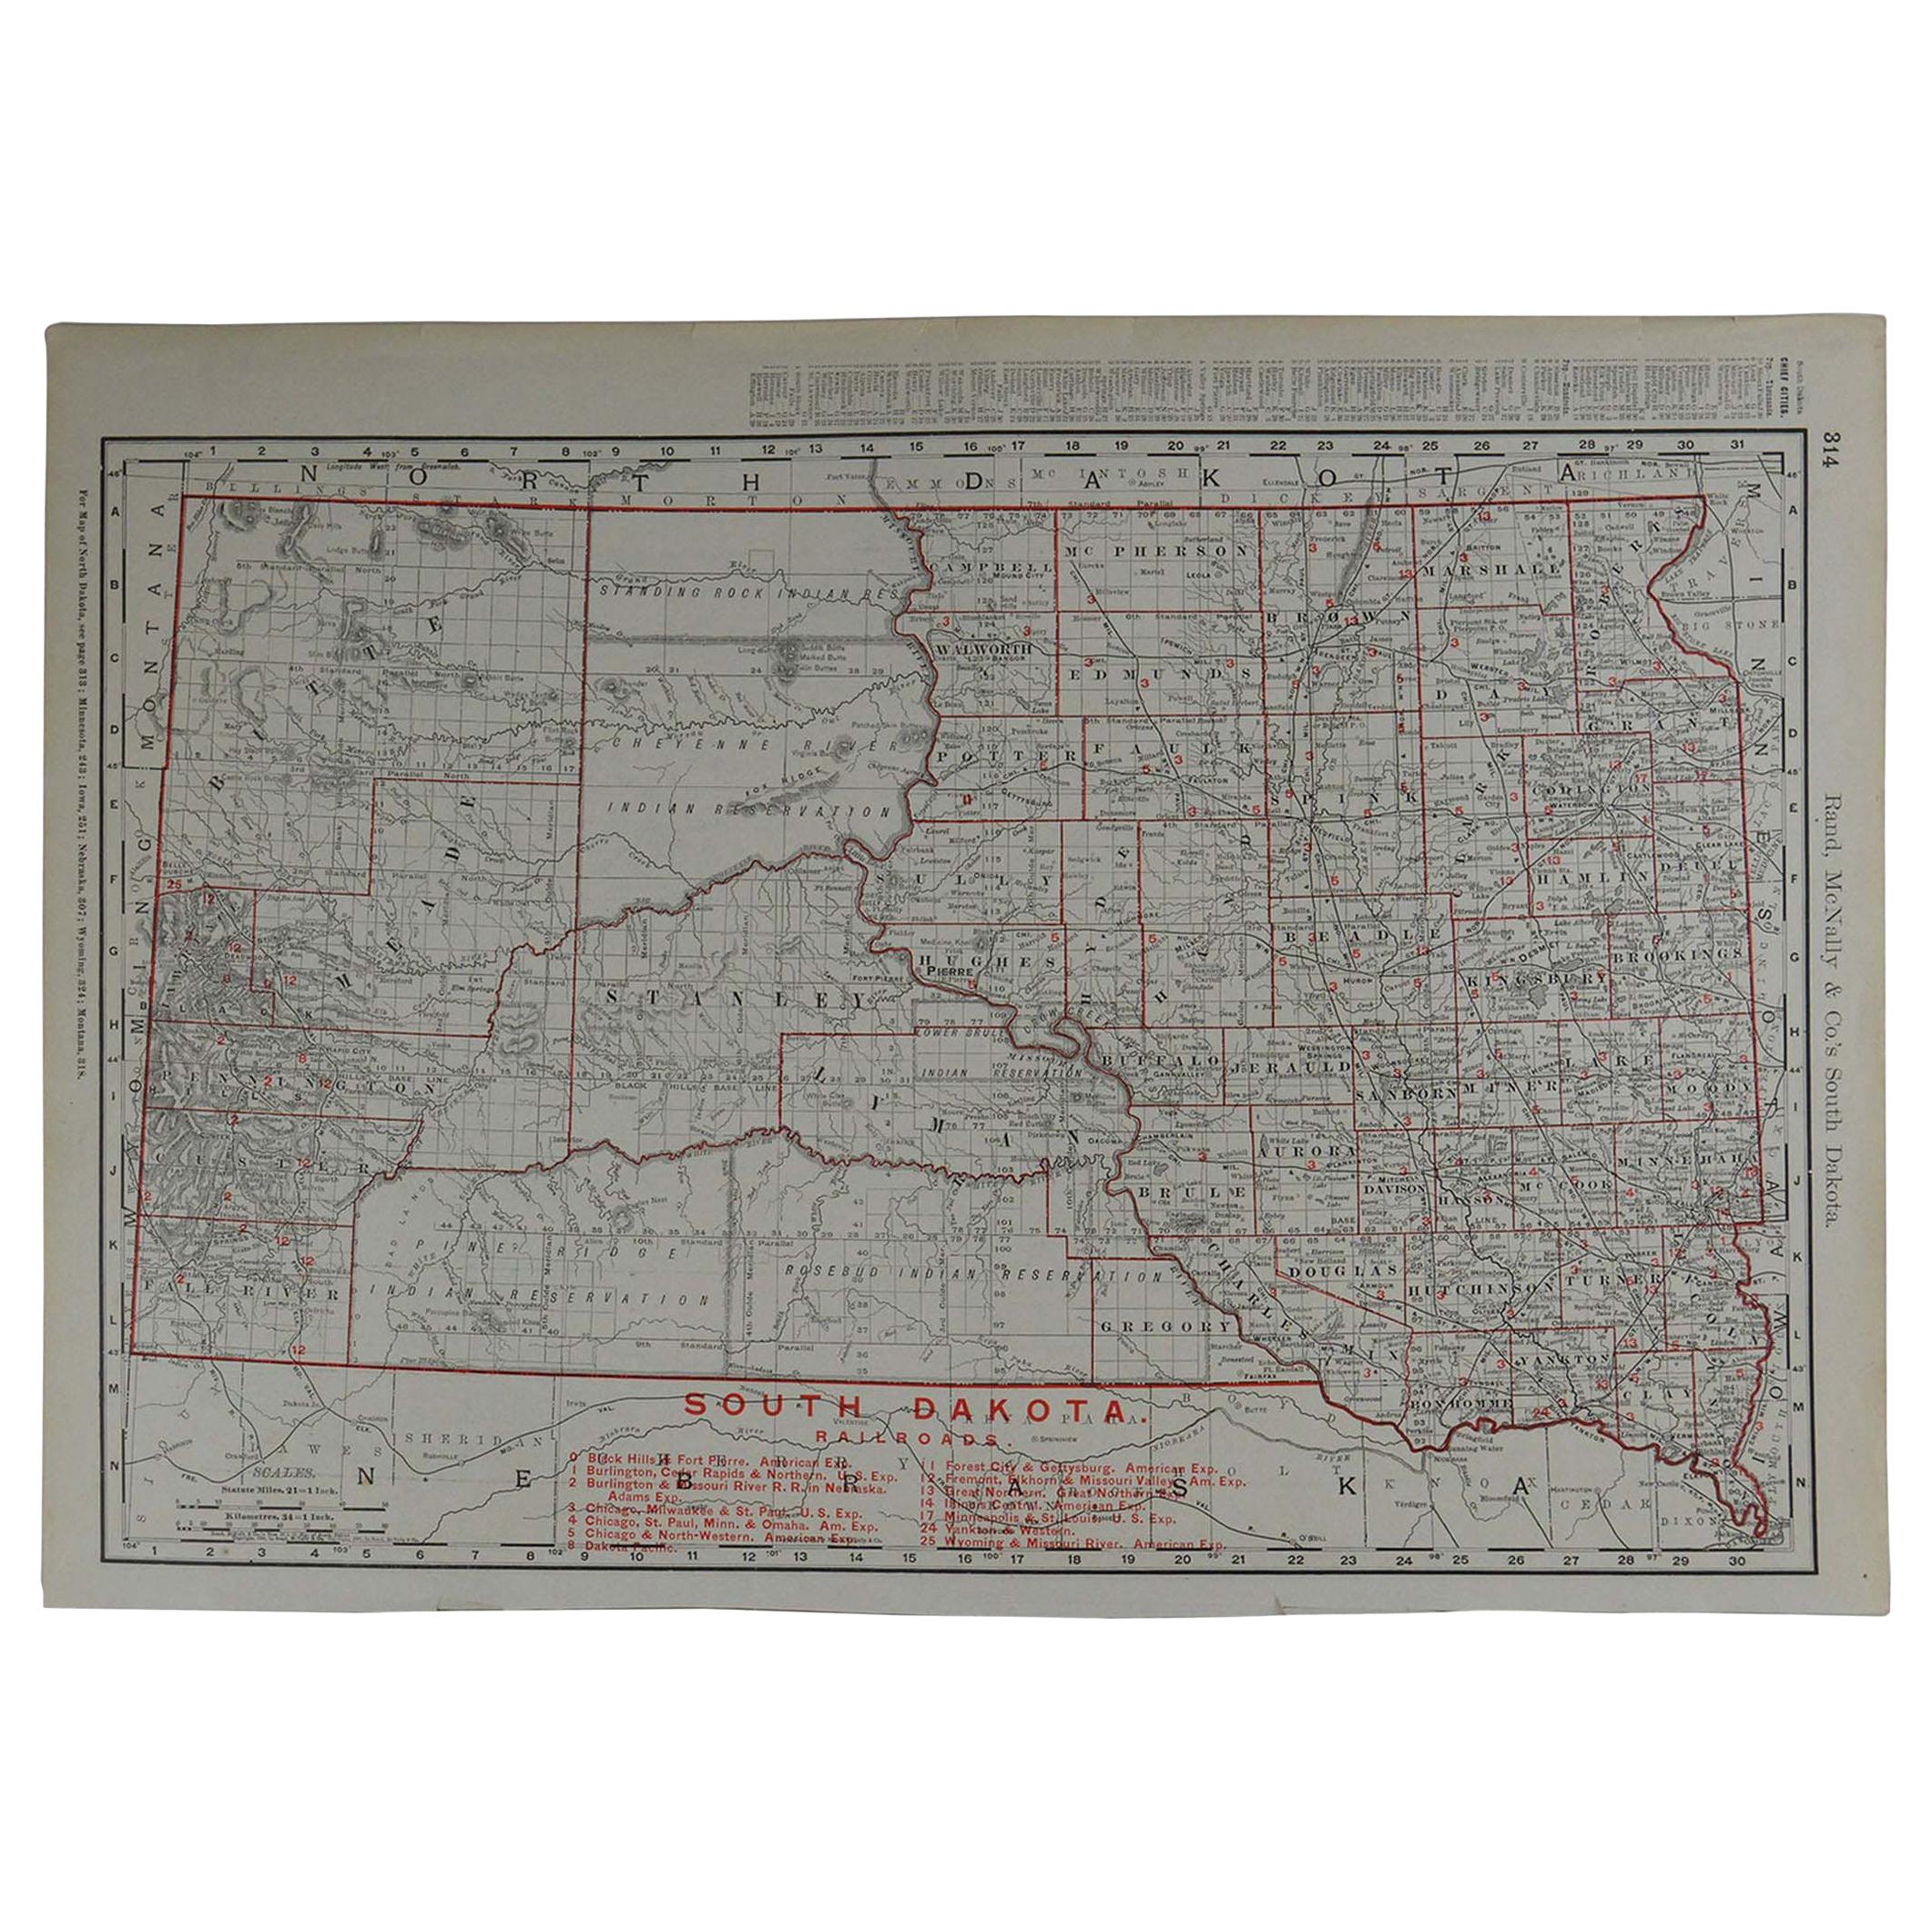 Original Antique Map of South Dakota by Rand McNally, circa 1900